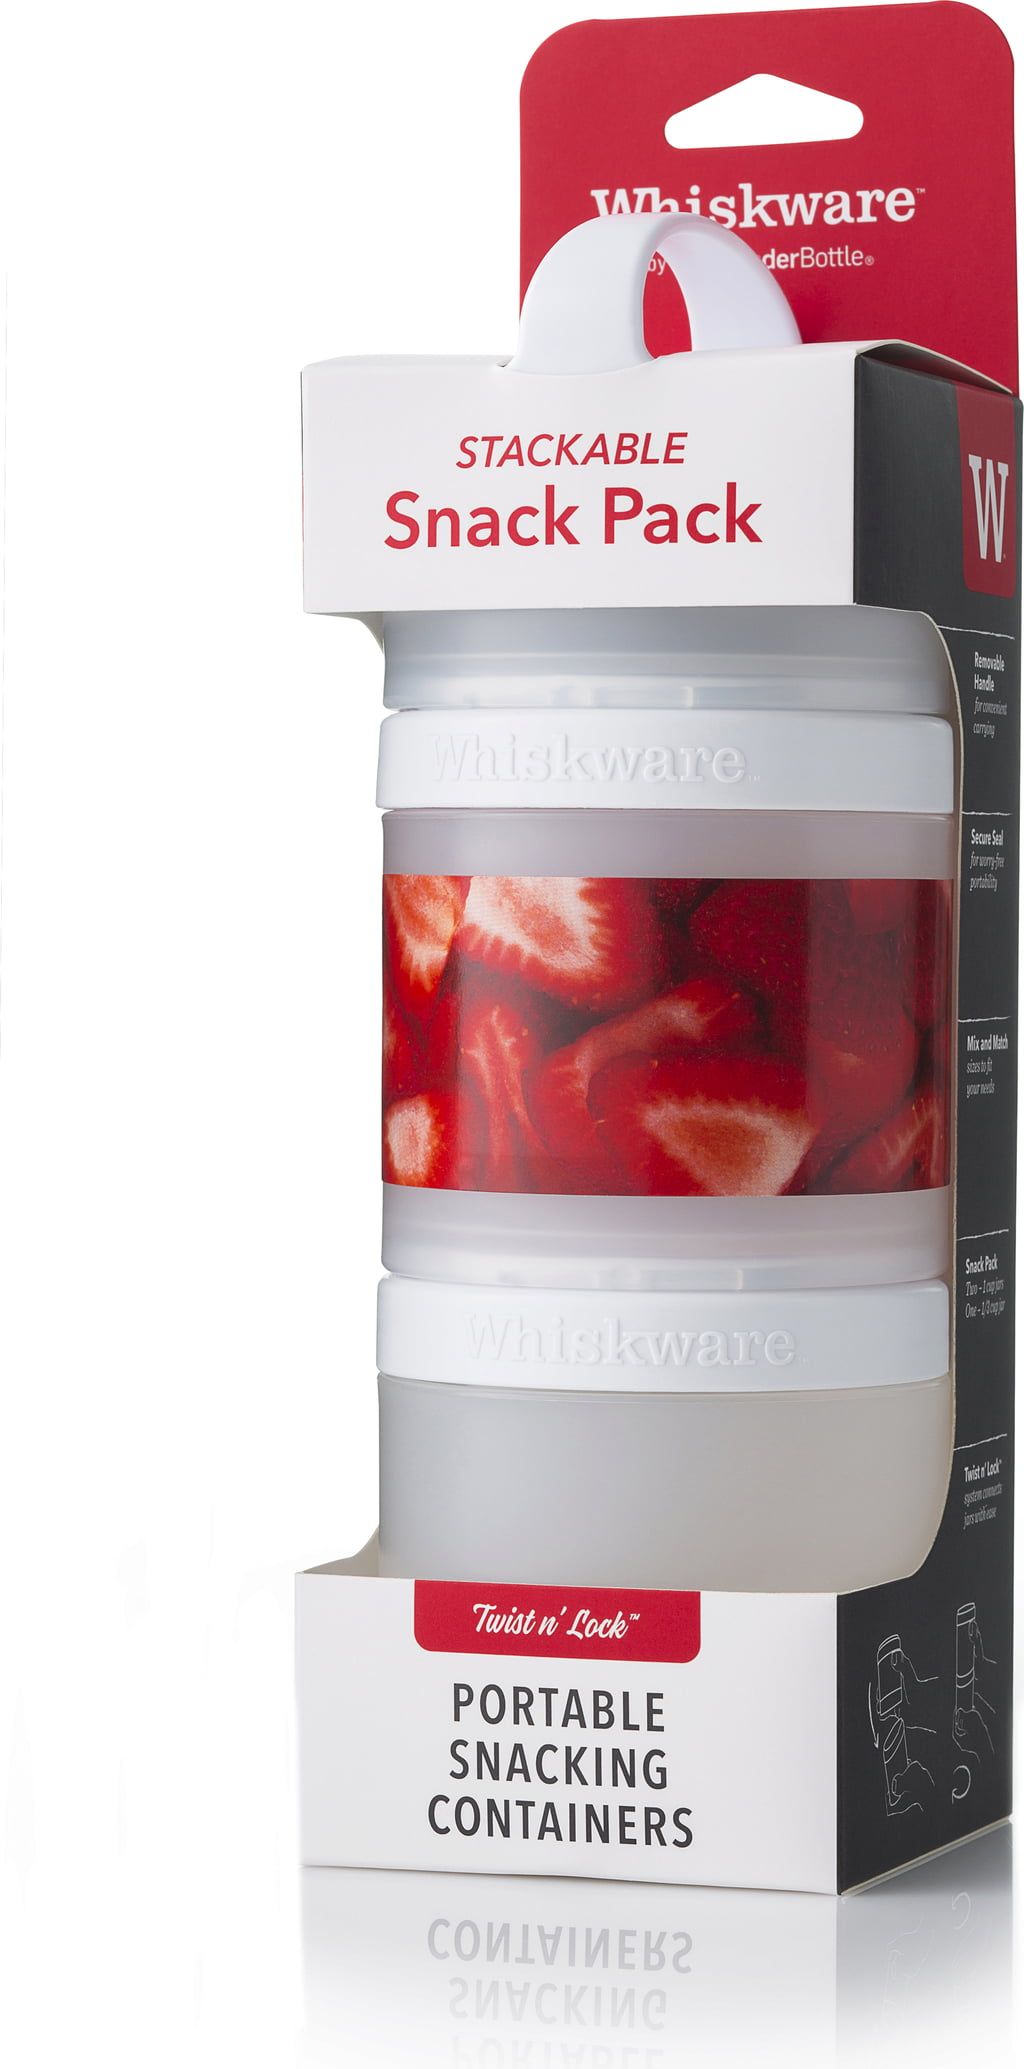 Whiskware Stackable Snack Pack - BlenderBottle - VitalAbo Online Shop Europe